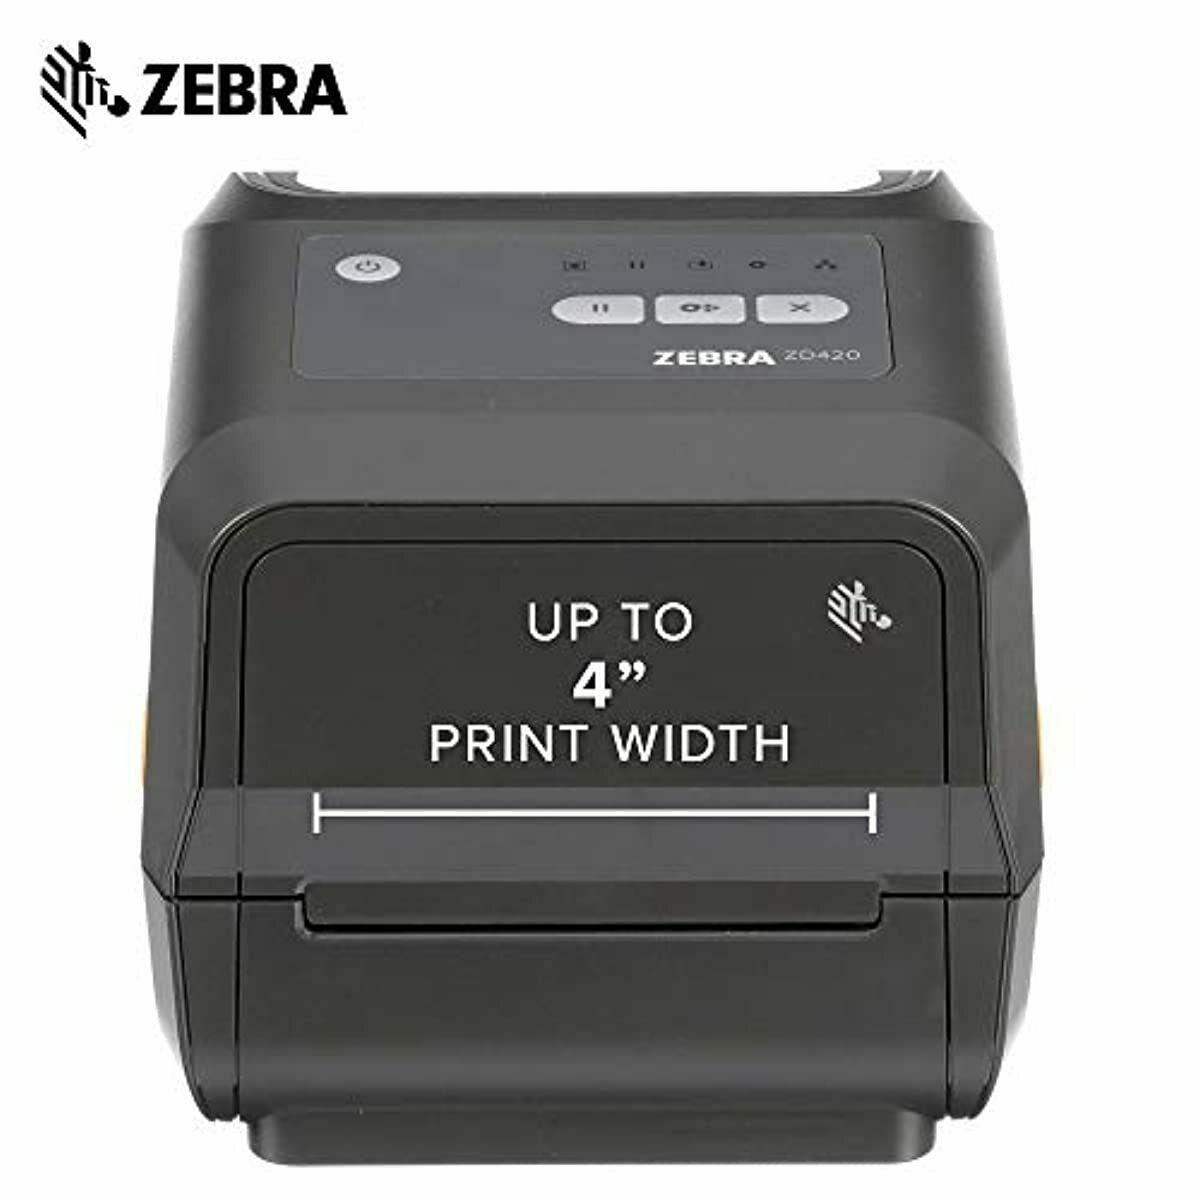 Zebra Zd420t Thermal Transfer Desktop Printer 203 Dpi Print Width 4 In Usb Zd420 Printers 3787